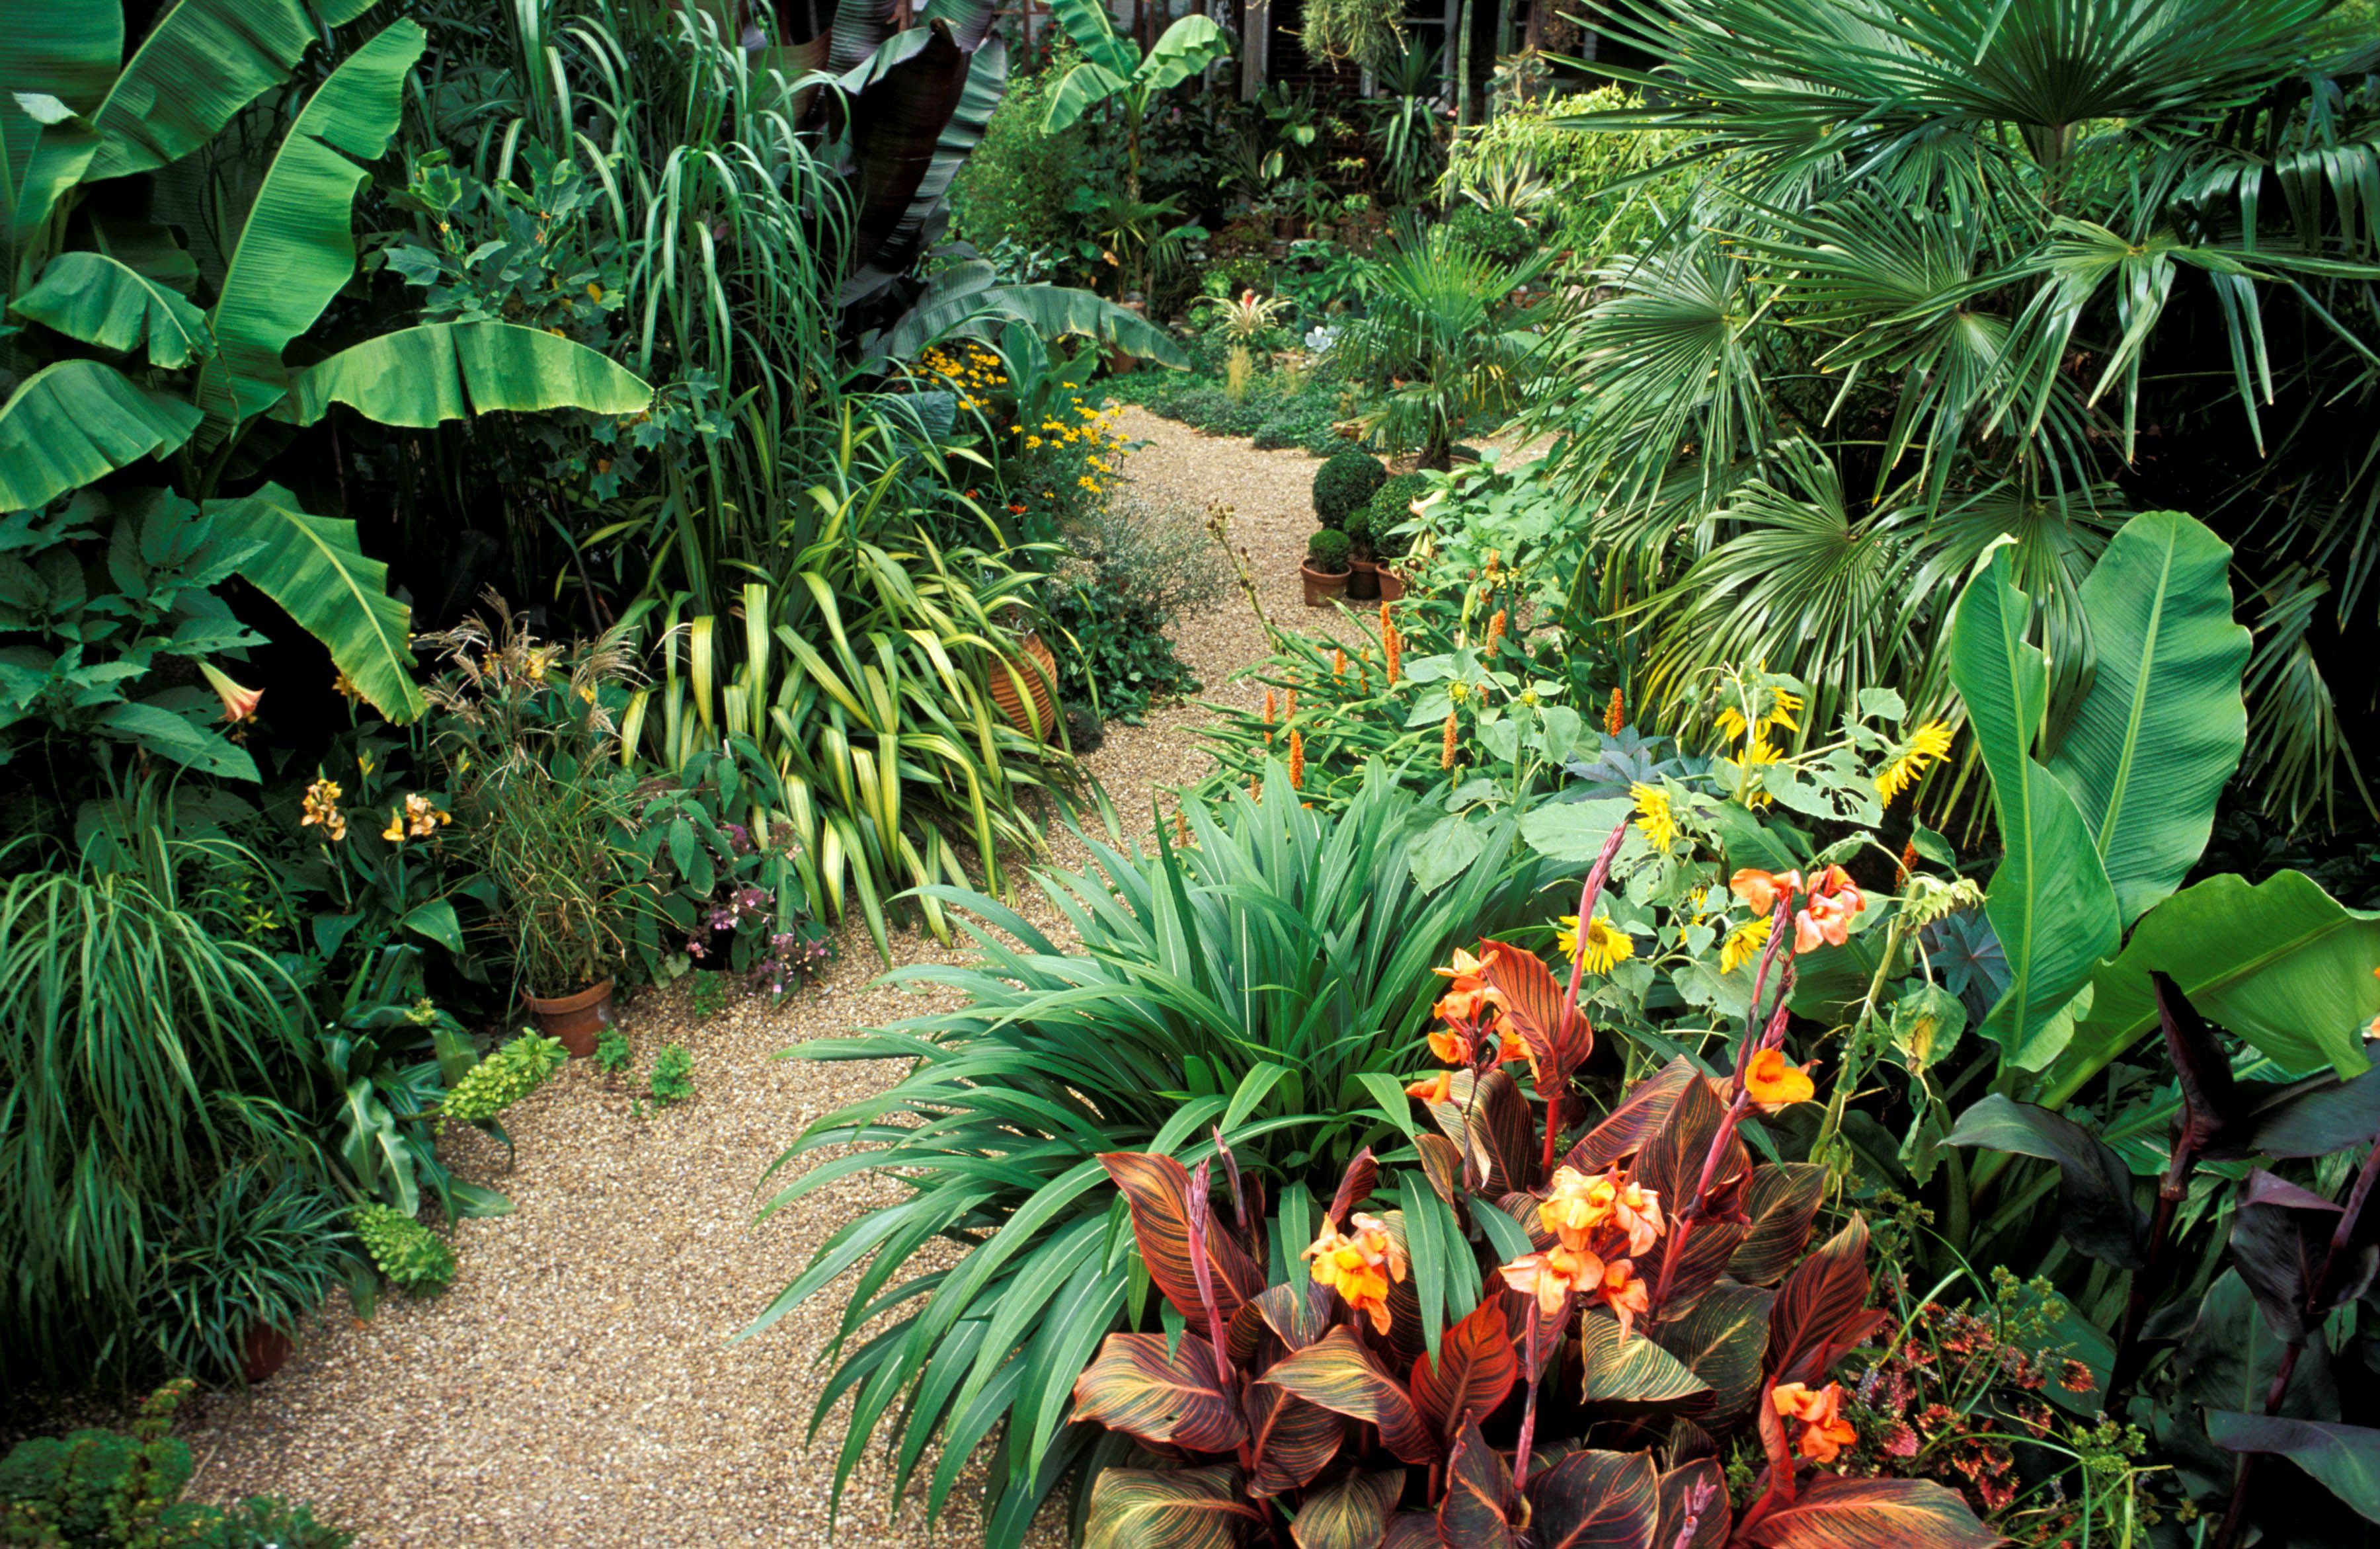 Tropical plant. Джим холокауст тропики. Чили Сельва тропические цветы. Тропический сад. Растения джунглей.